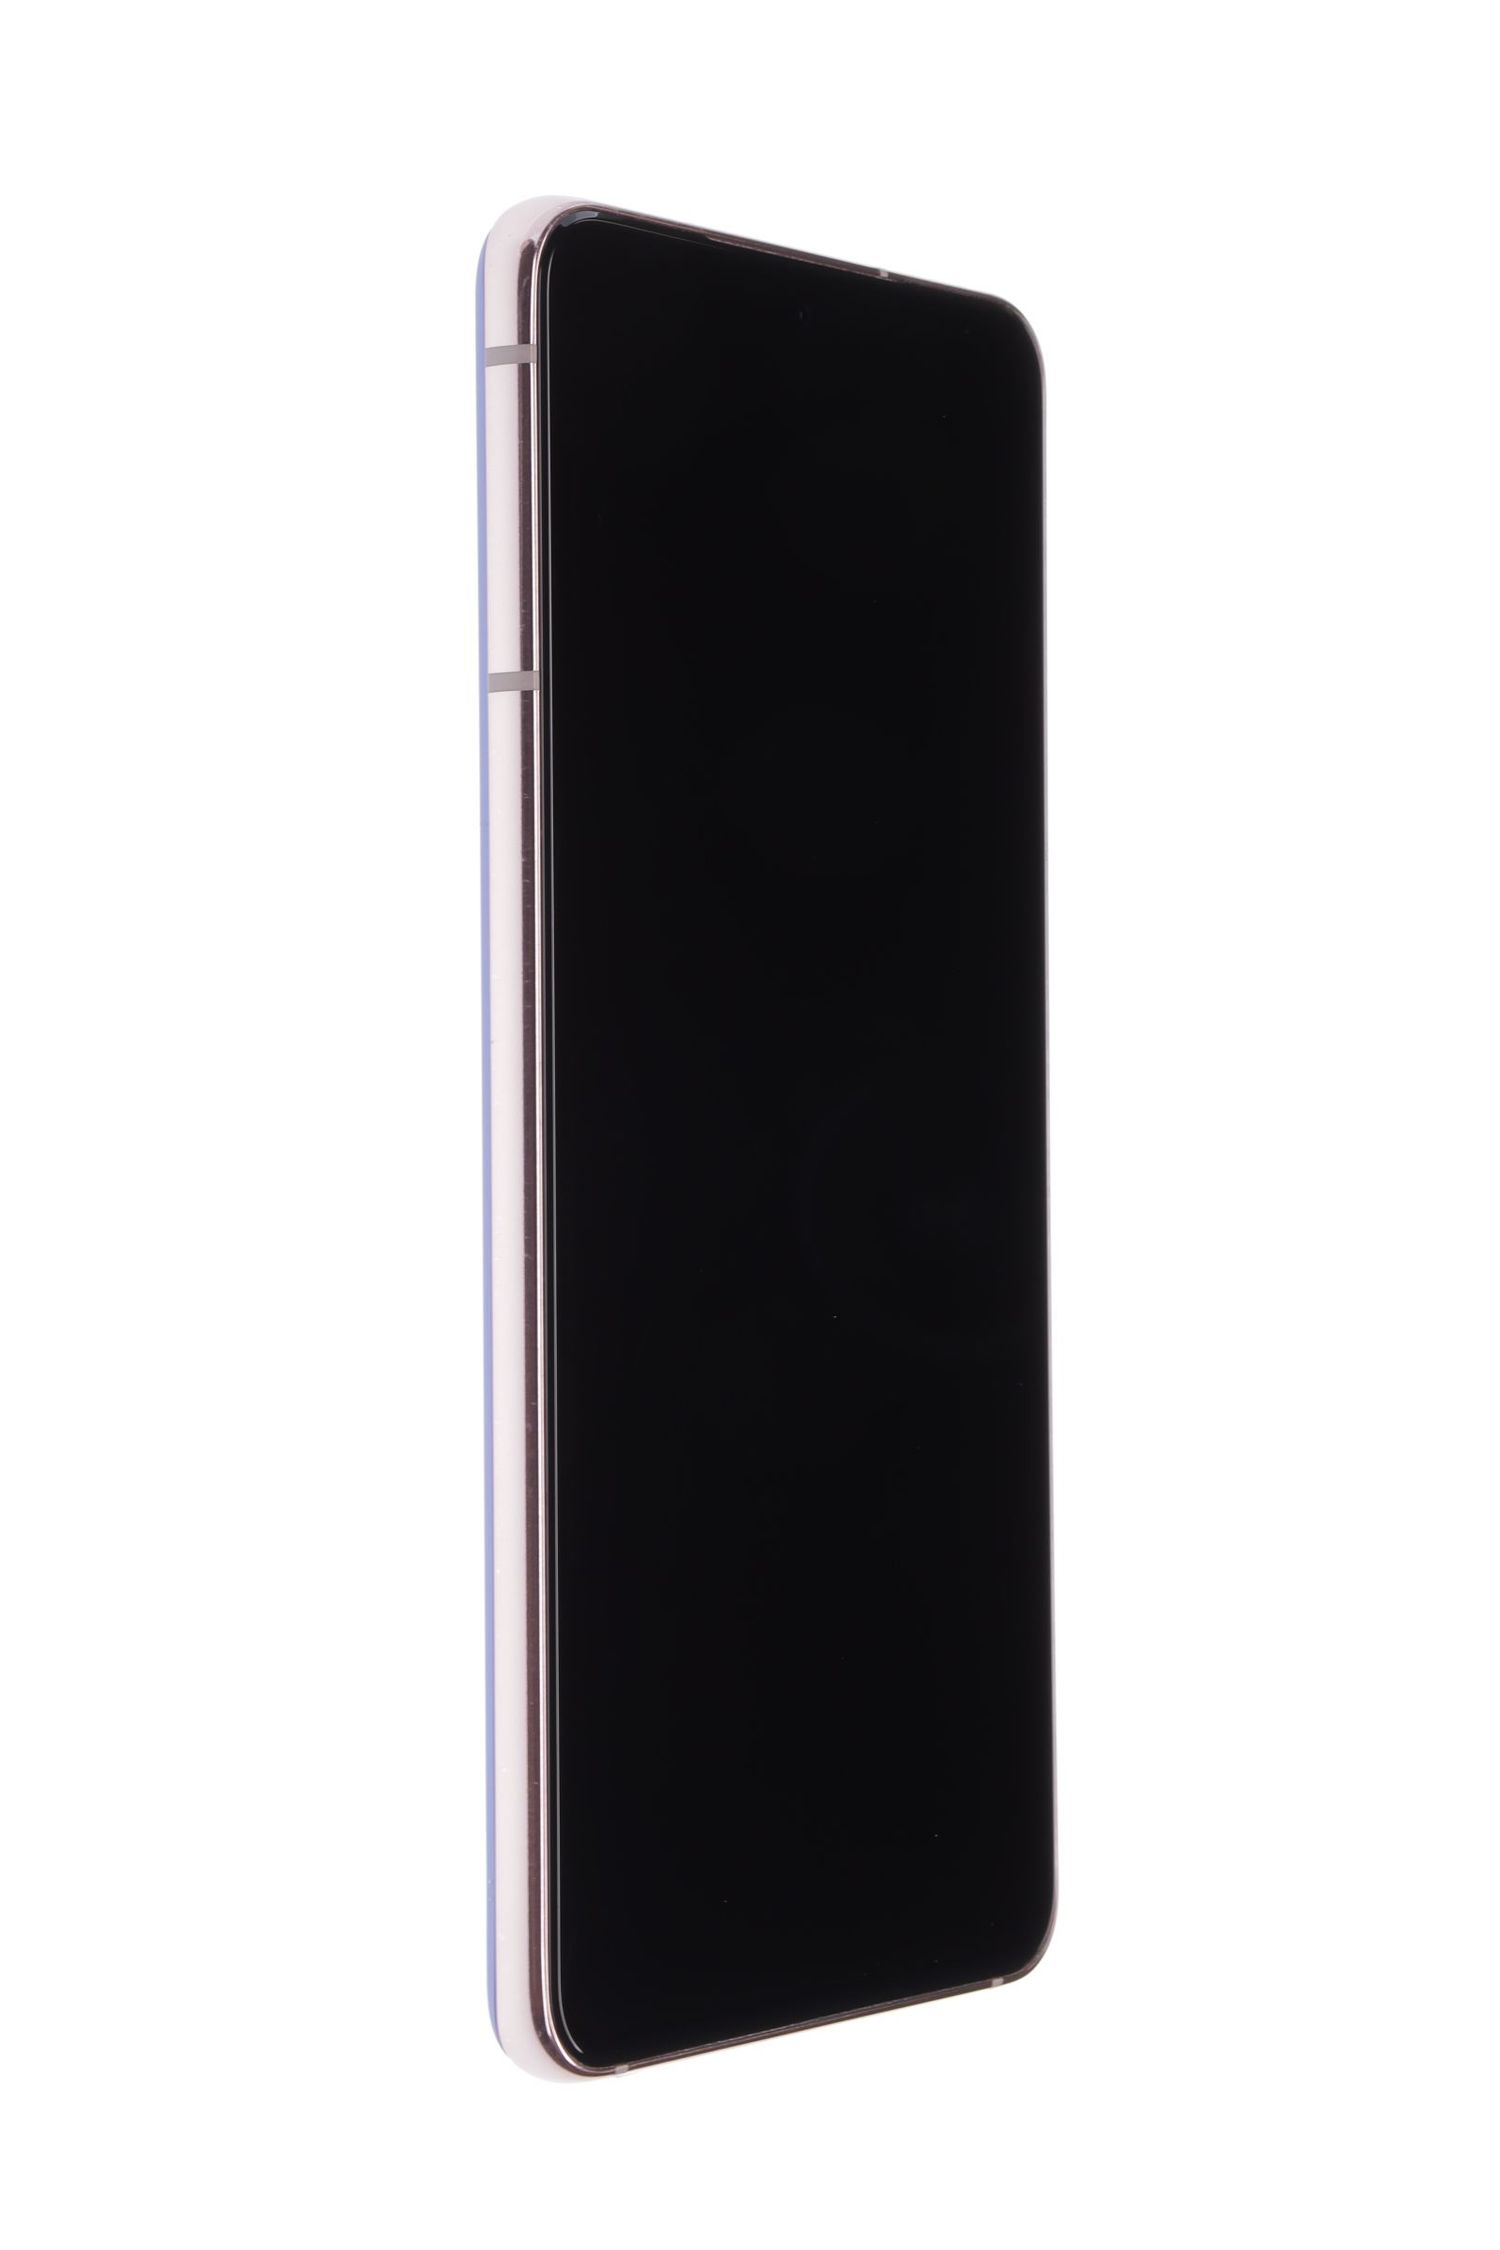 Κινητό τηλέφωνο Samsung Galaxy S21 5G Dual Sim, Purple, 128 GB, Bun